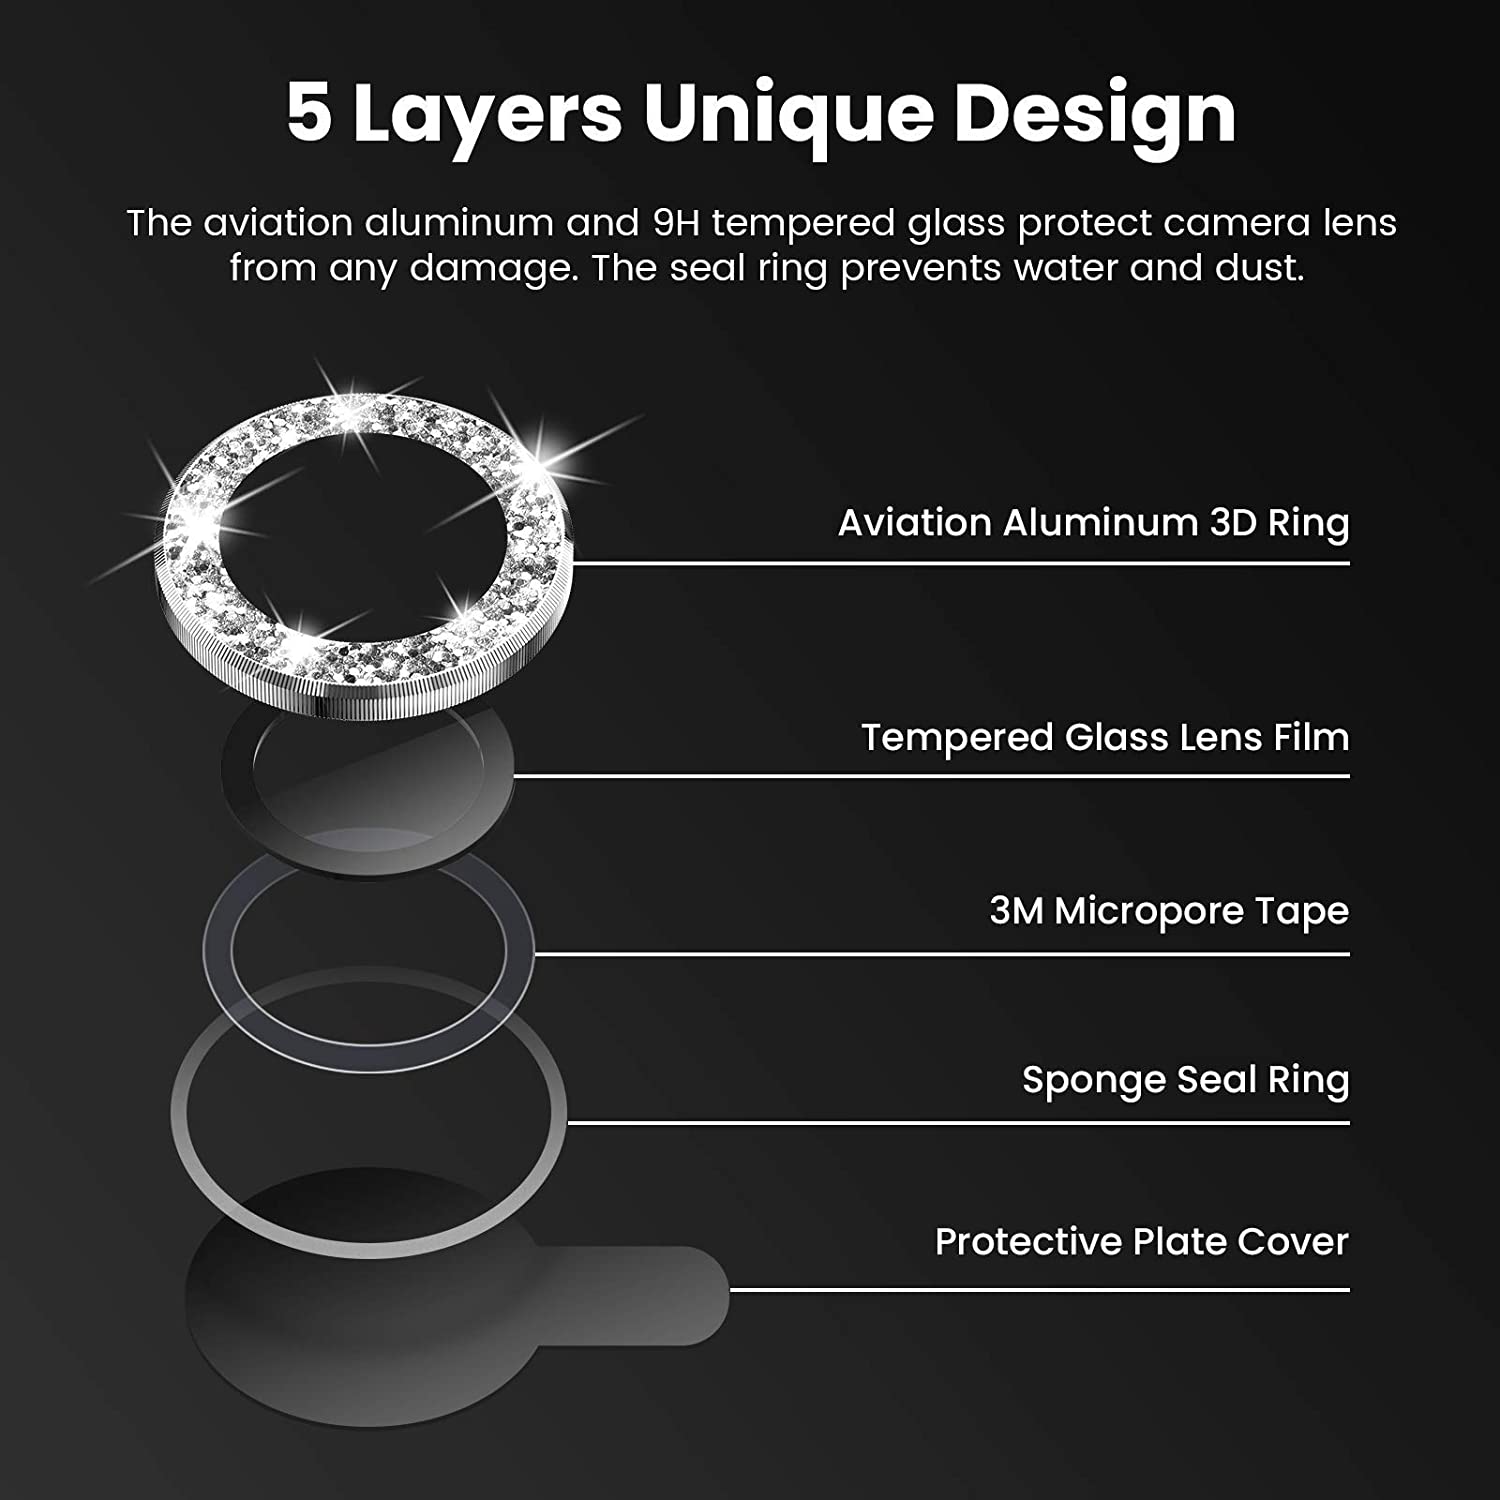 Bộ miếng dán kính cường lực Camera Diamond đính đá cho iPhone 12 Pro Max hiệu HOTCASE Kuzoom Lens Ring bảo vệ camera mang  lại khả năng chụp hình sắc nét full HD (độ cứng 9H, chống trầy) - hàng nhập khẩu